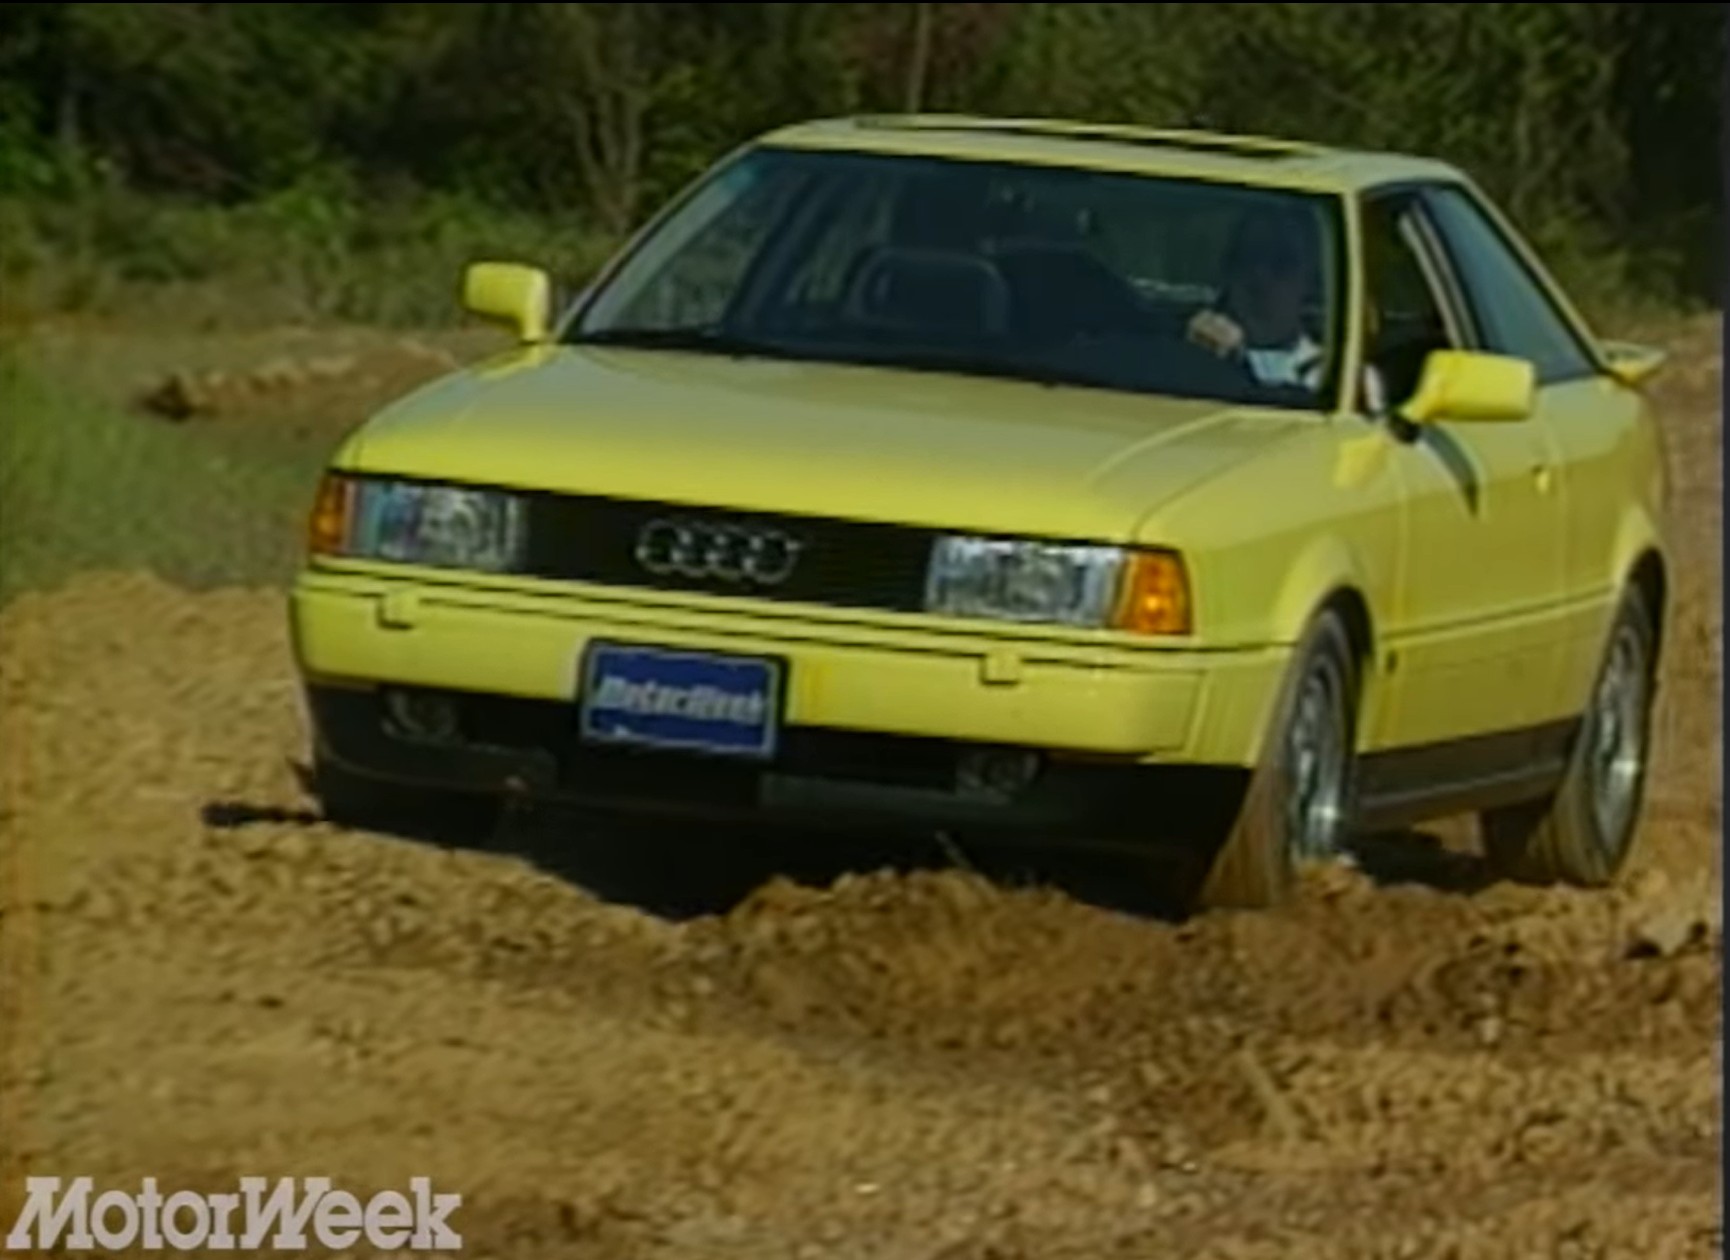 1990 Audi Coupe Quattro